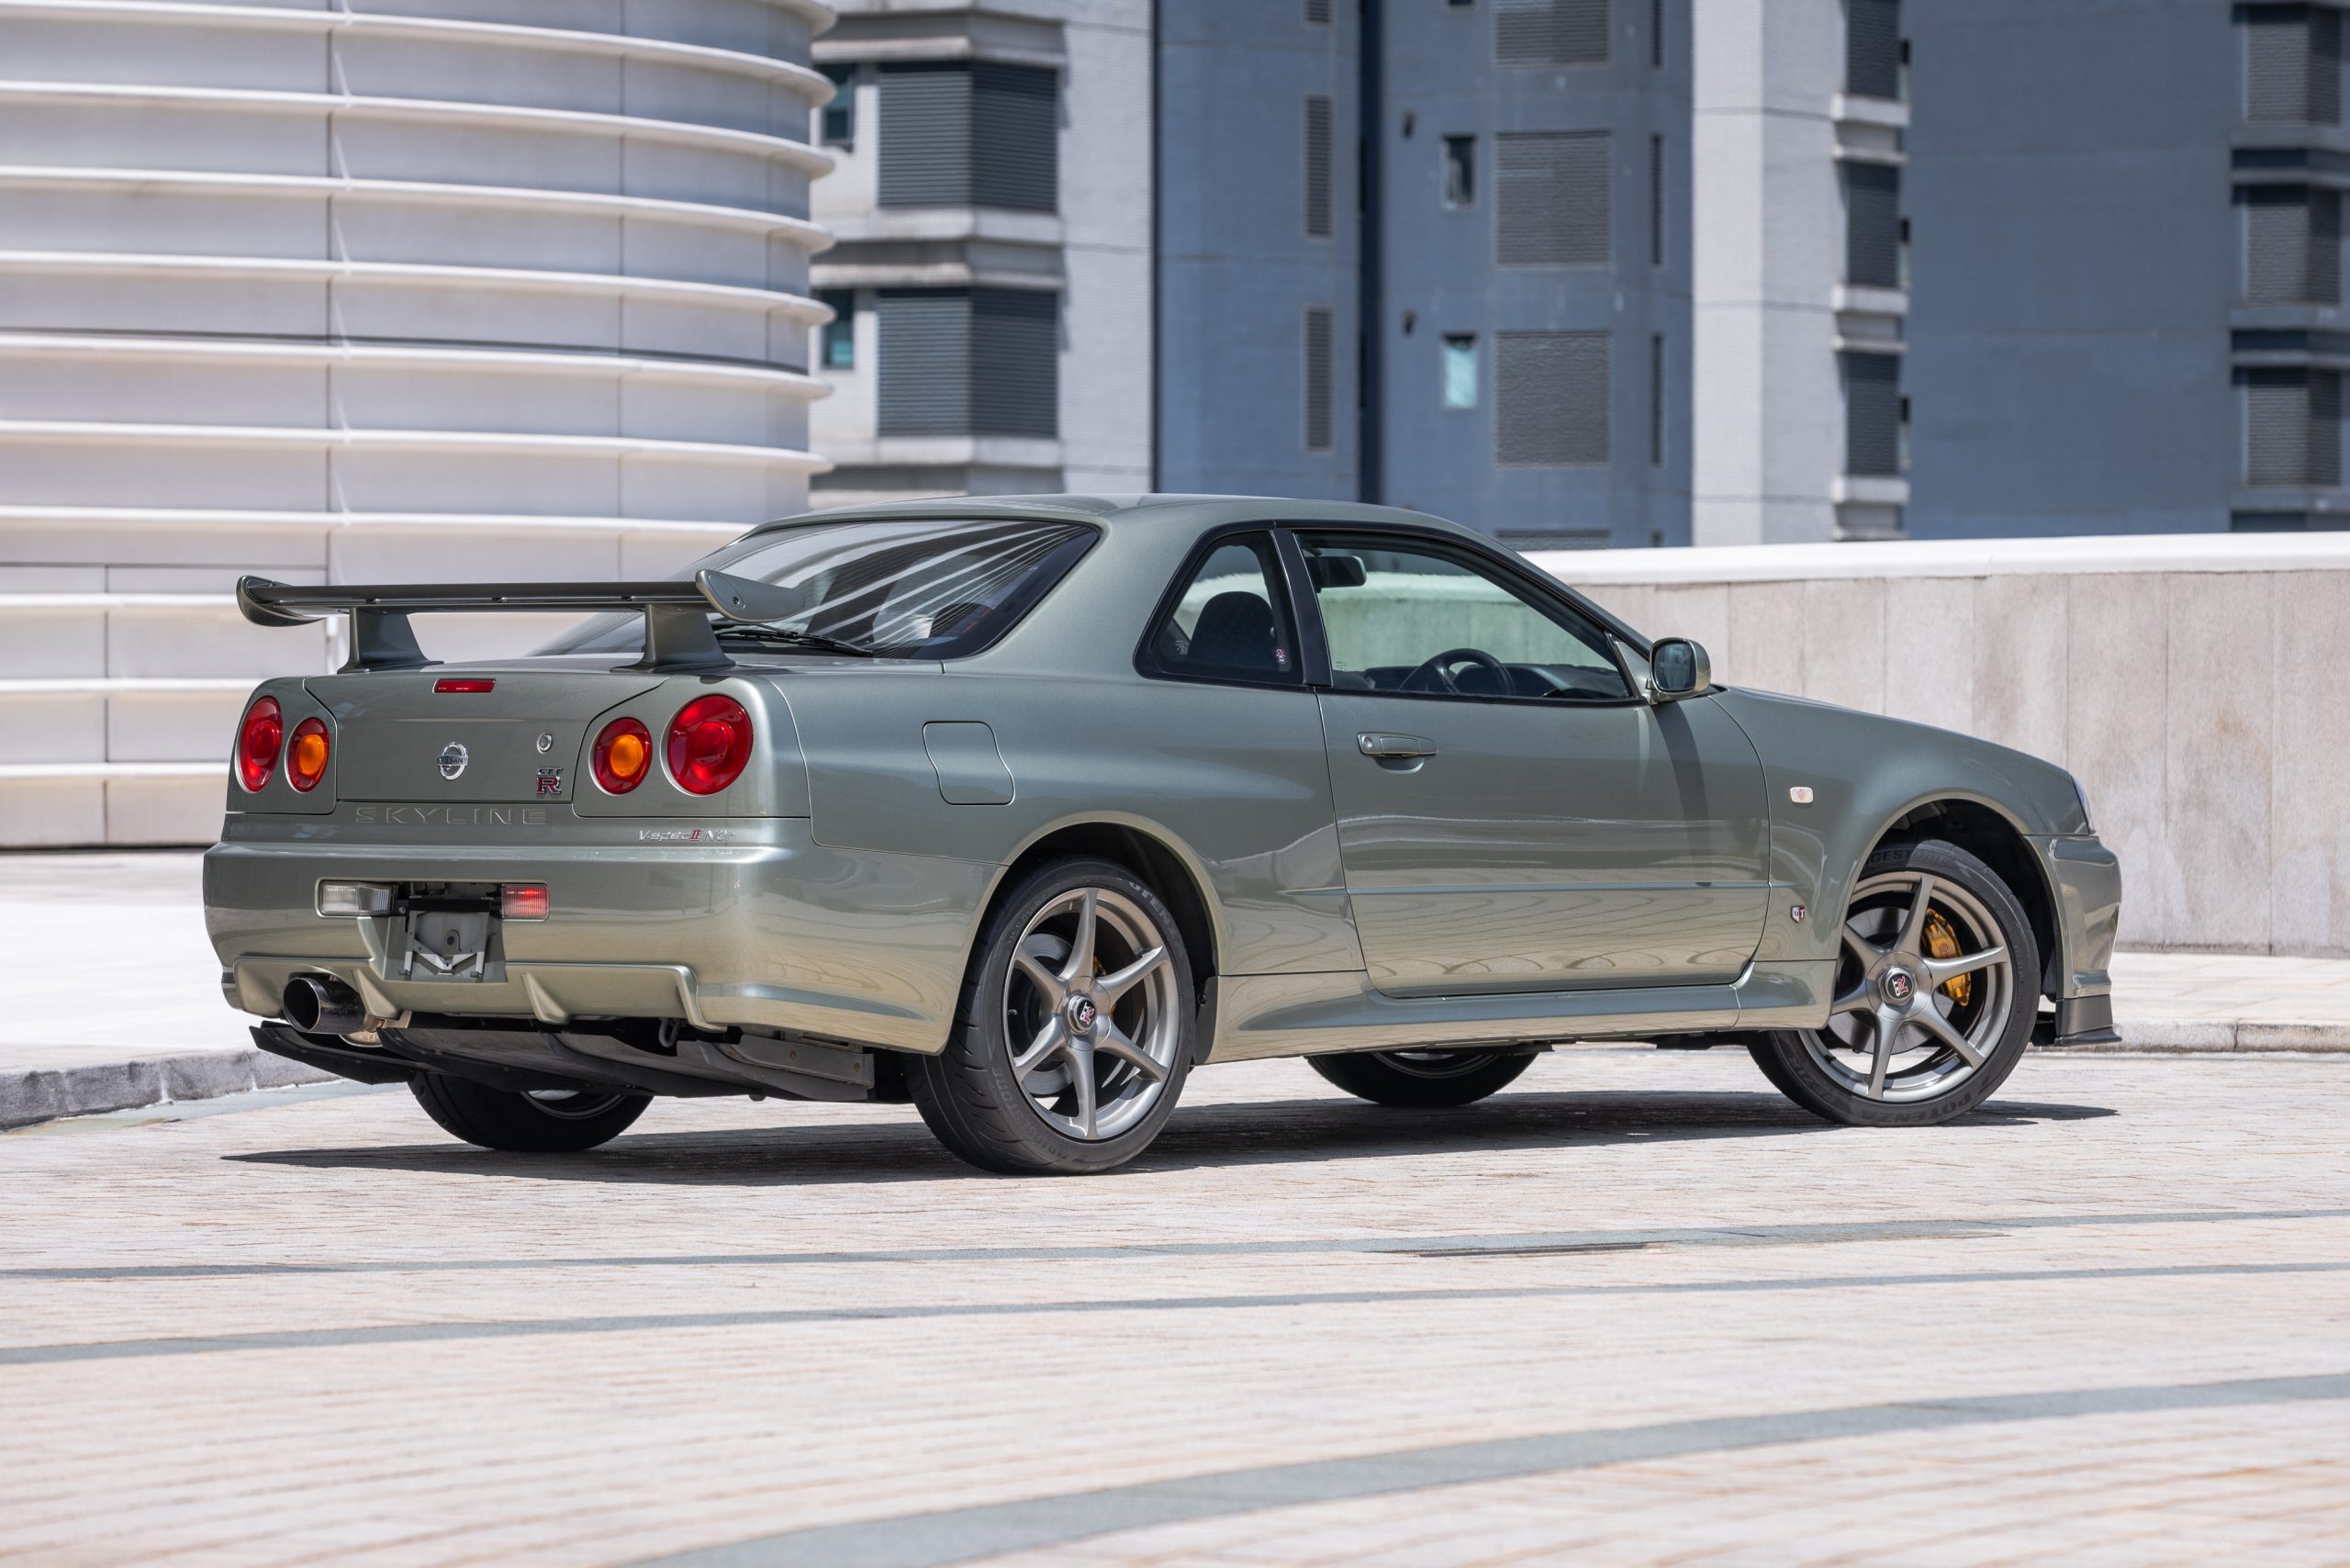 Nissan Skyline GT-R V-Spec rear